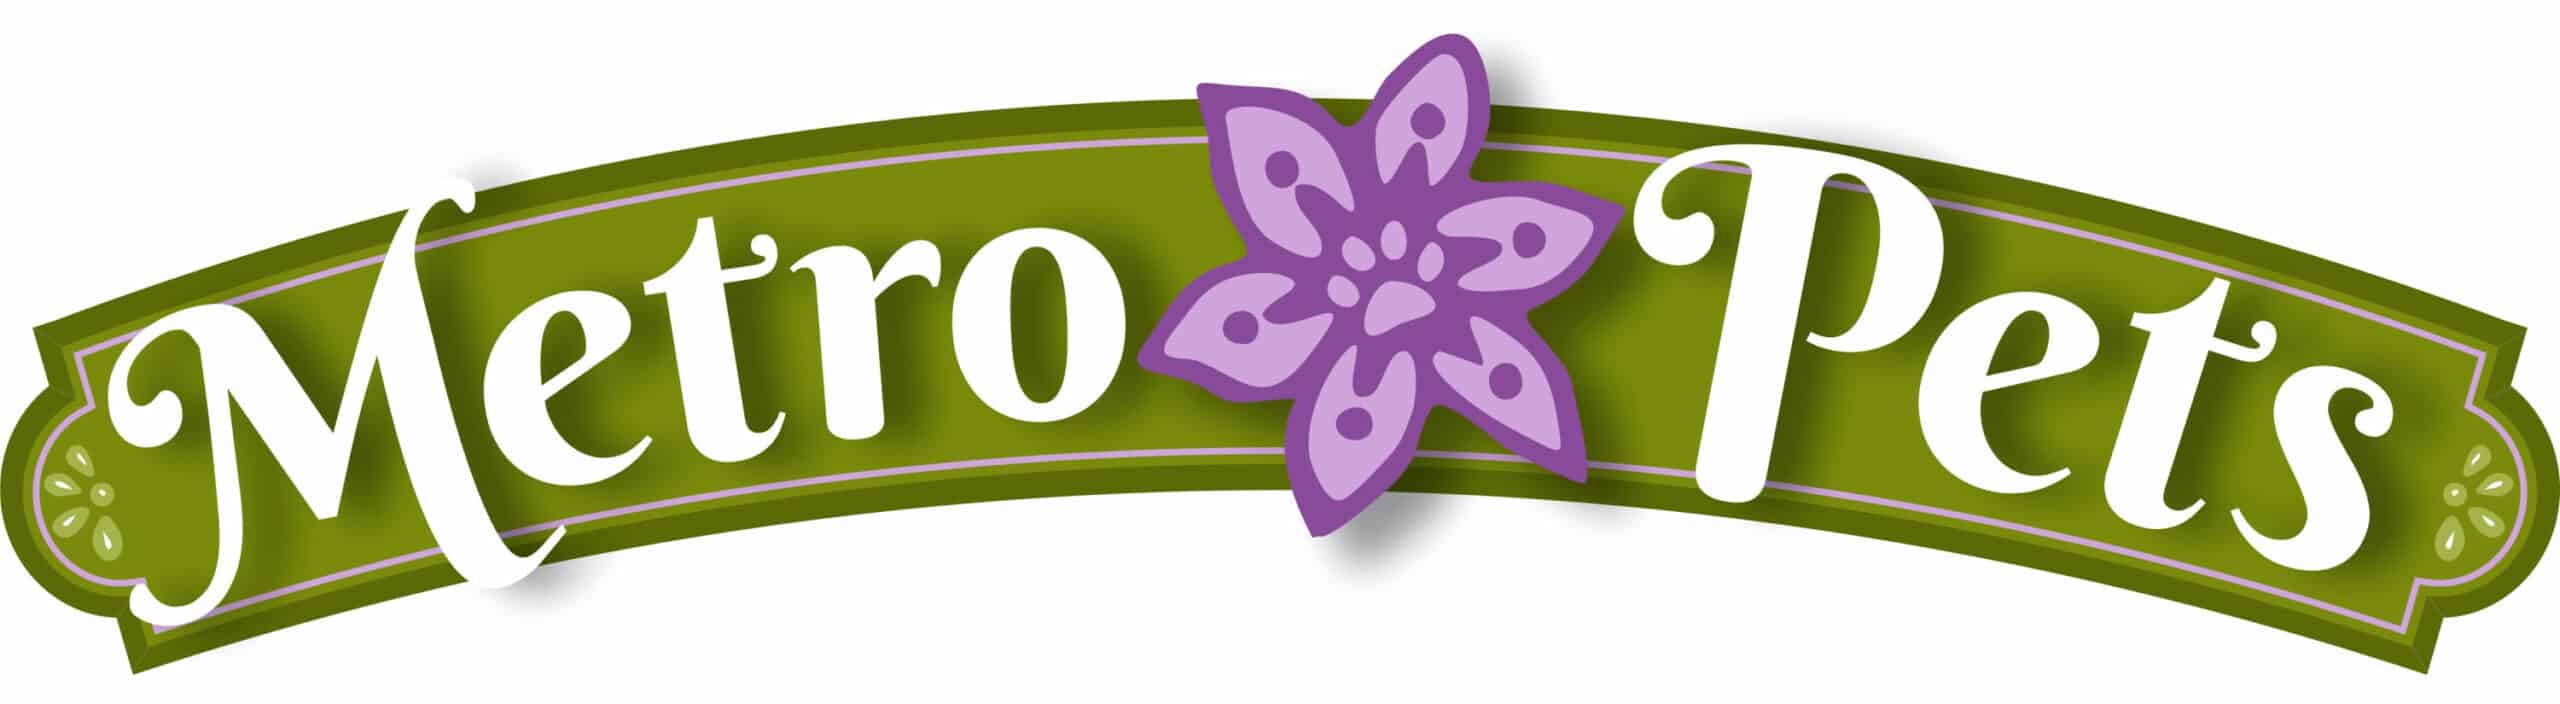 Metro Pets Logo